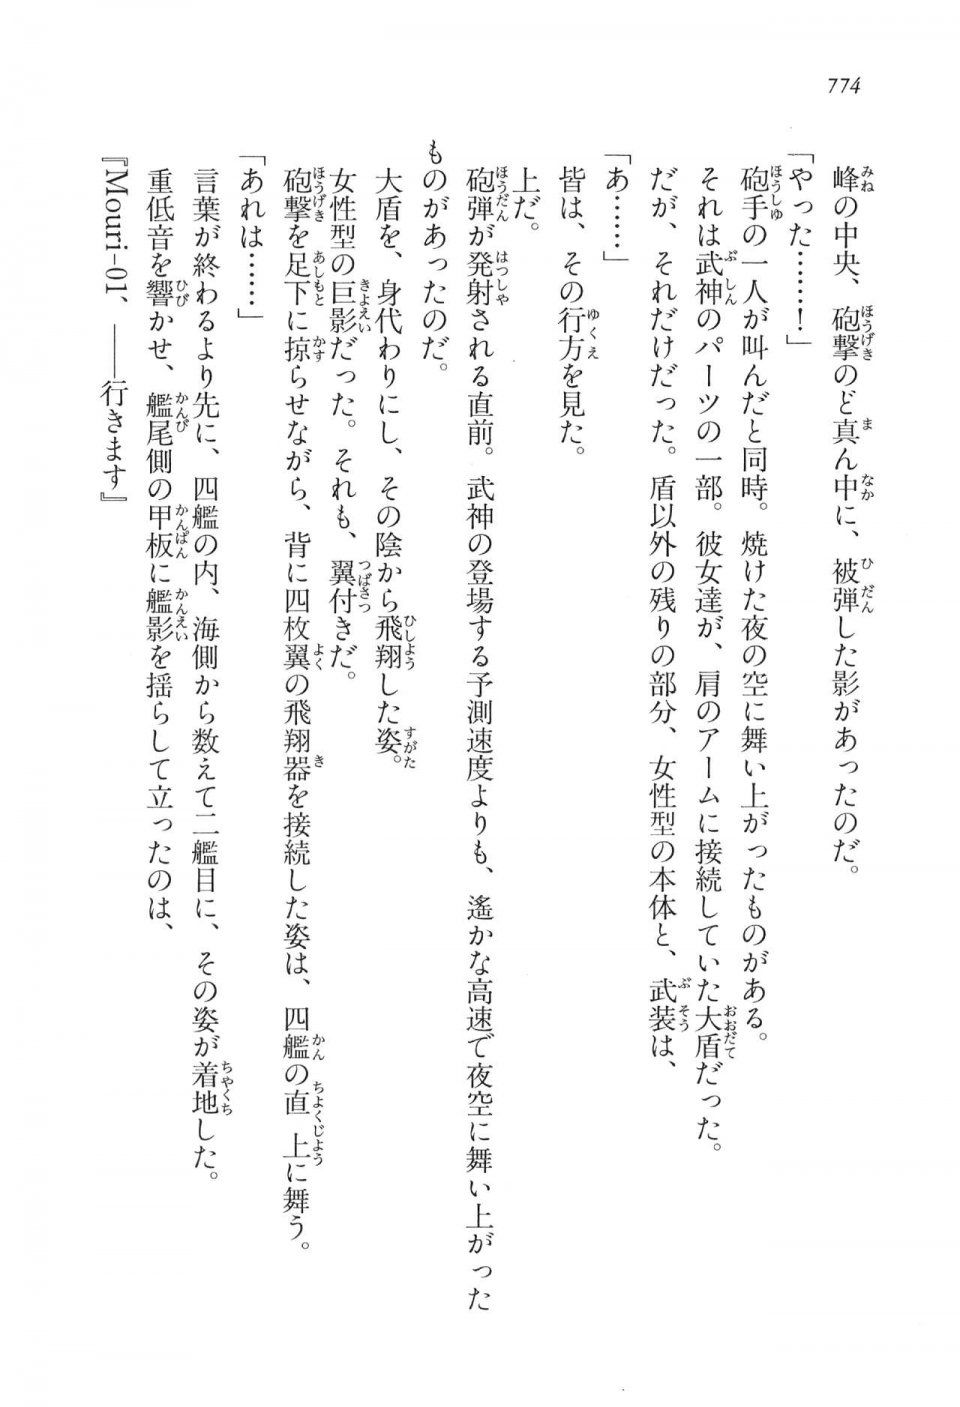 Kyoukai Senjou no Horizon LN Vol 16(7A) - Photo #774